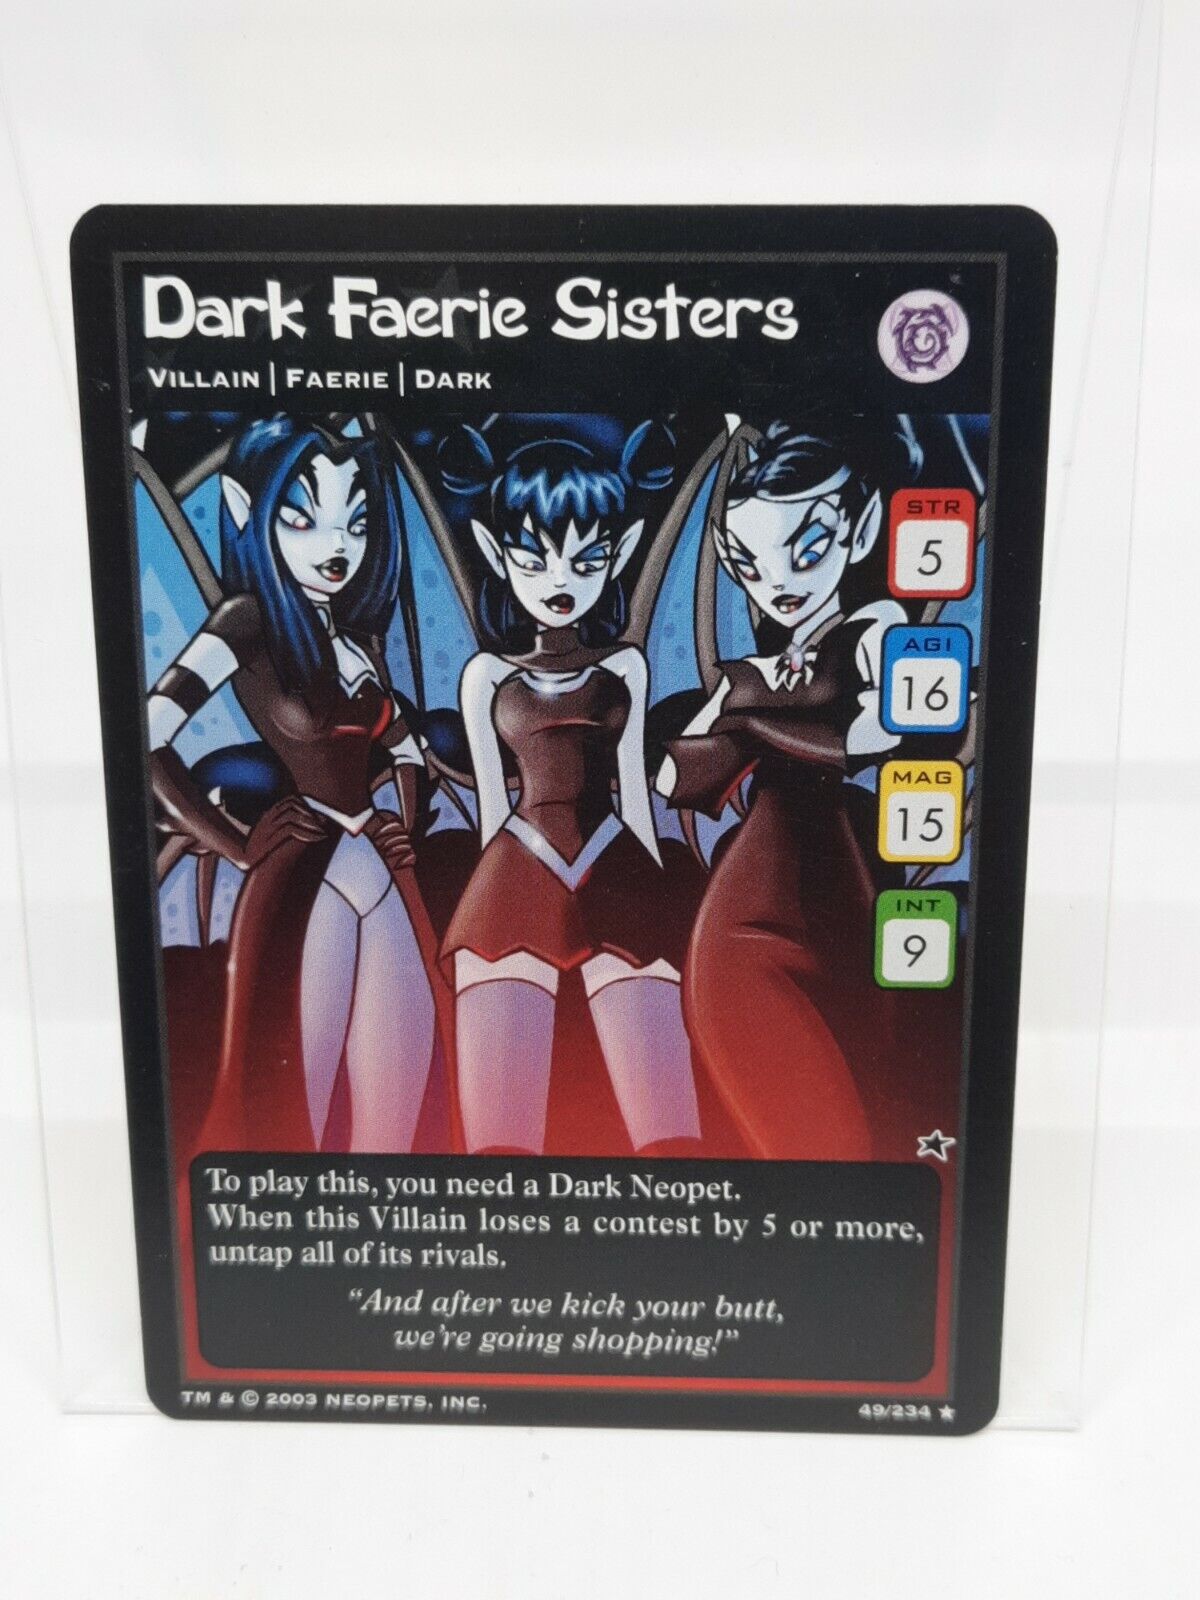 Dark Faerie Sisters 49/234 Neopets 2003 LP